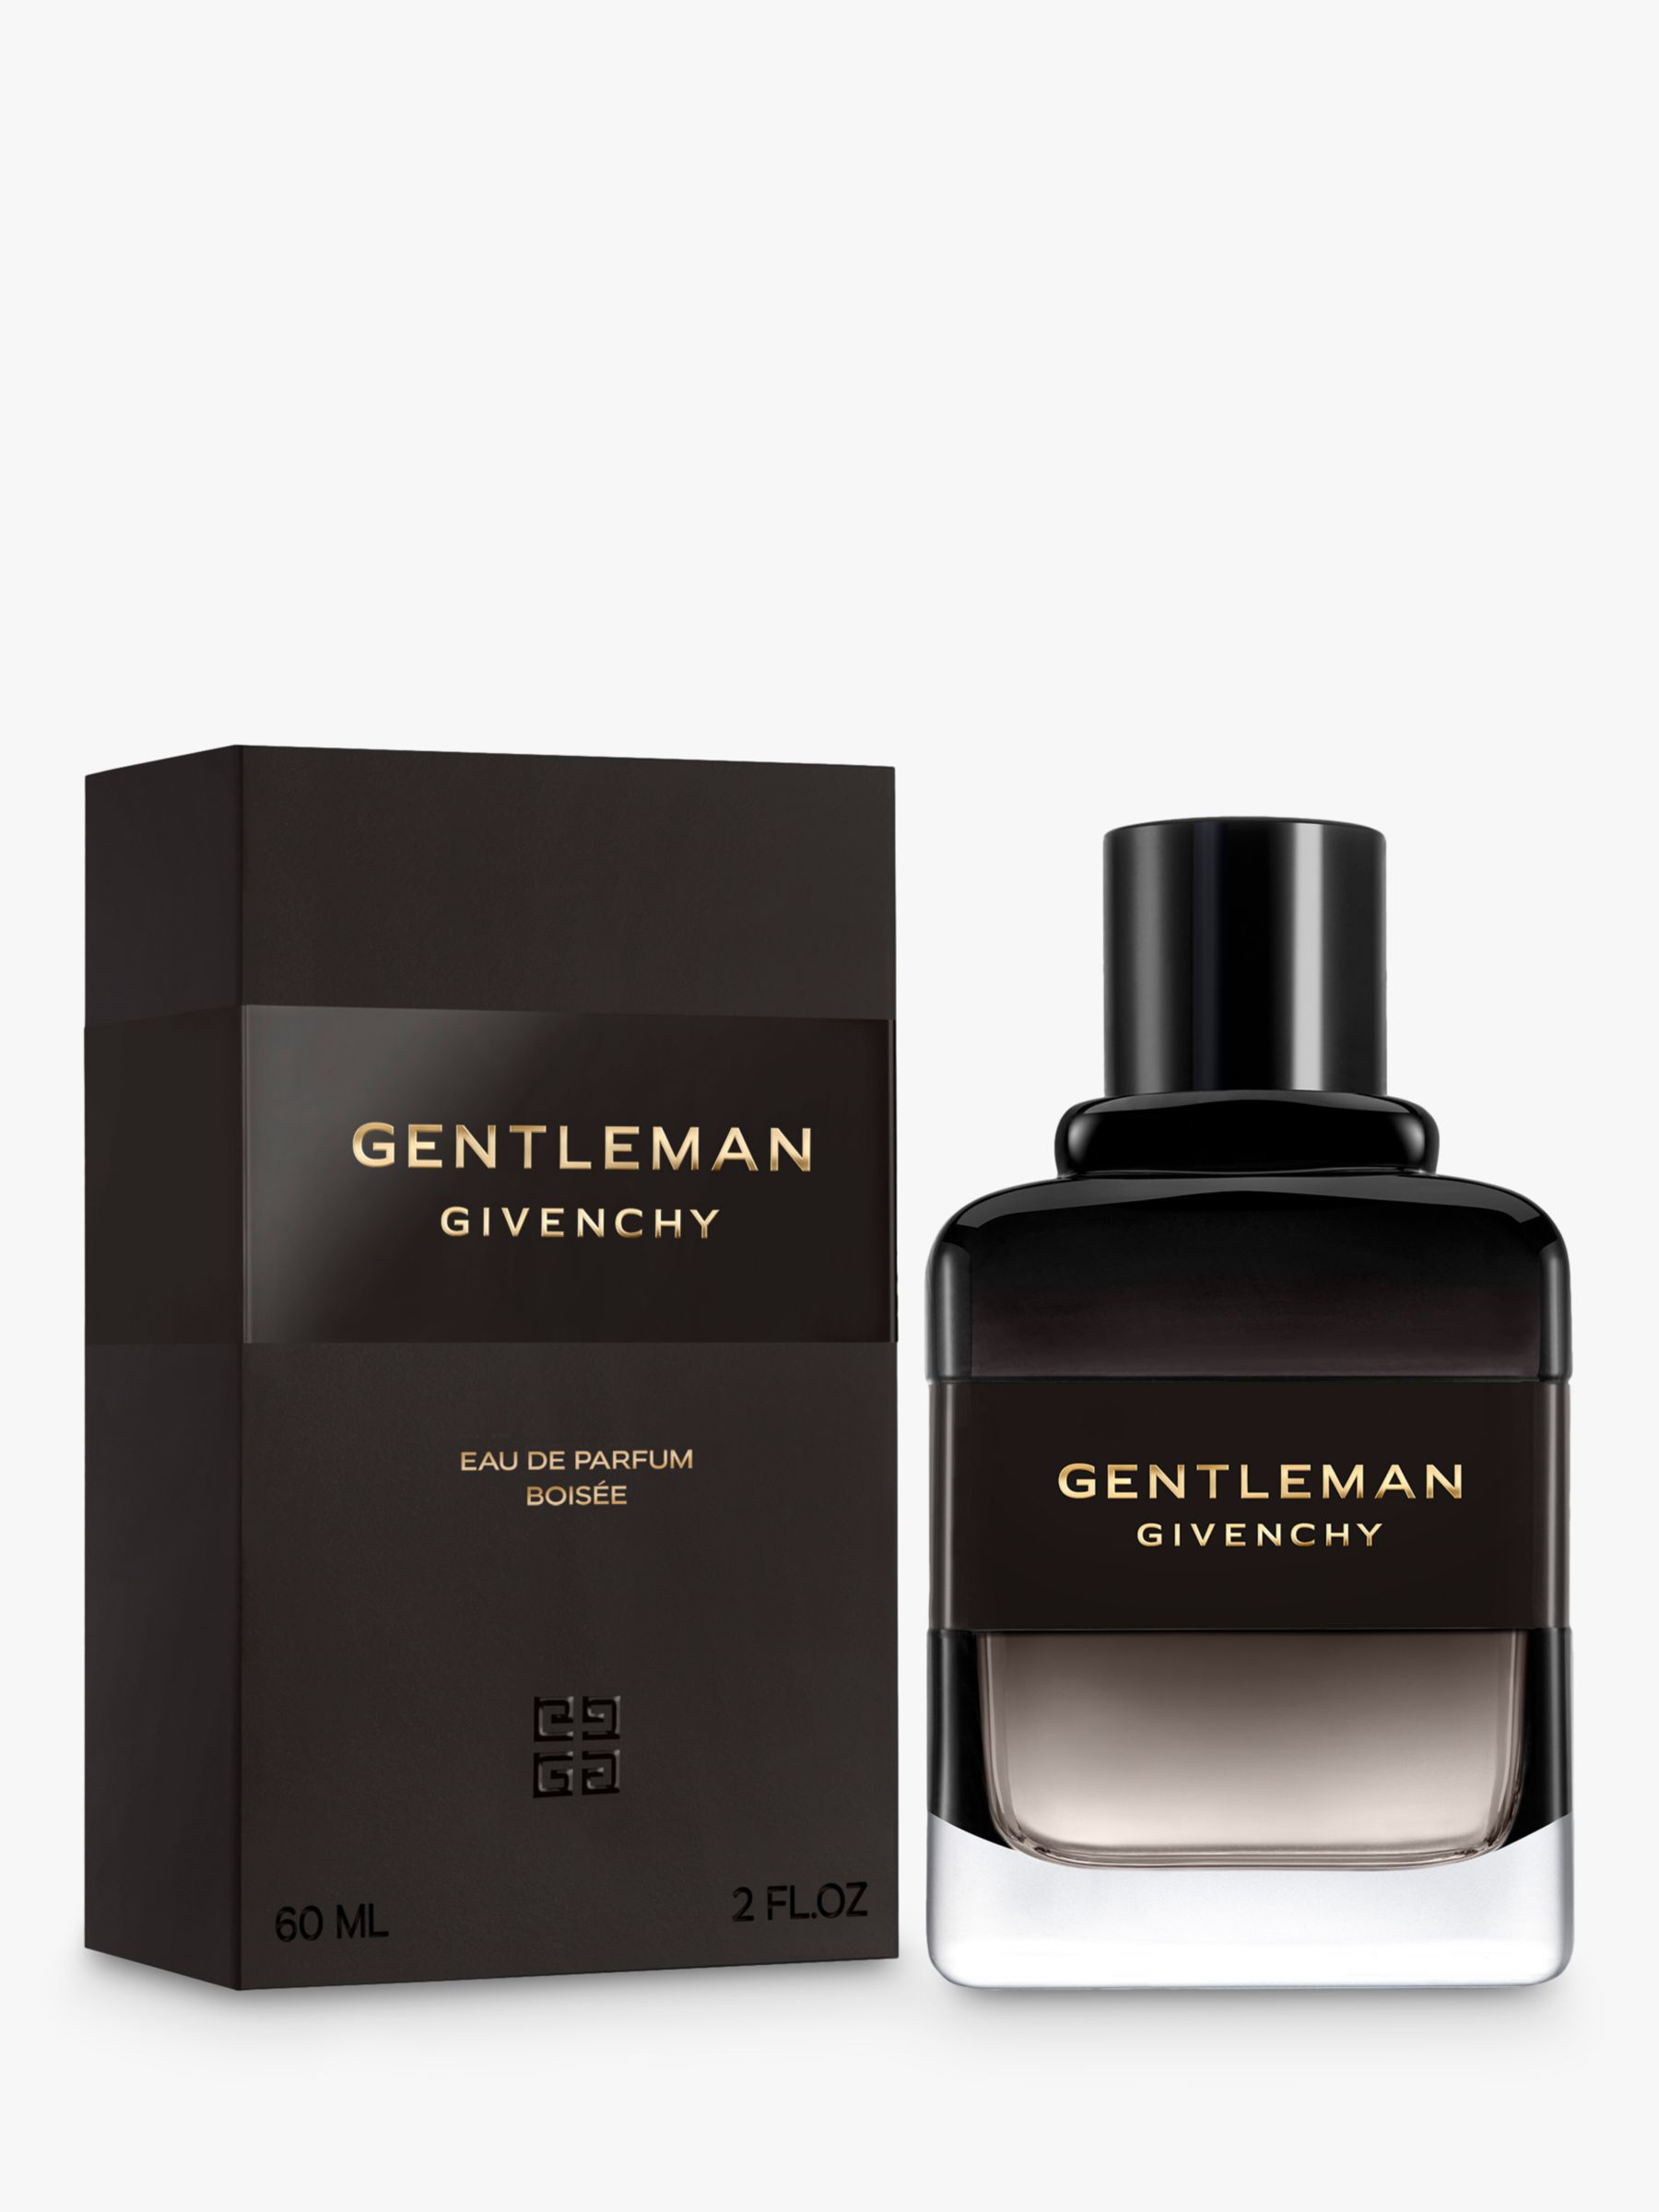 Givenchy Gentleman Eau de Parfum Boisée, 60ml